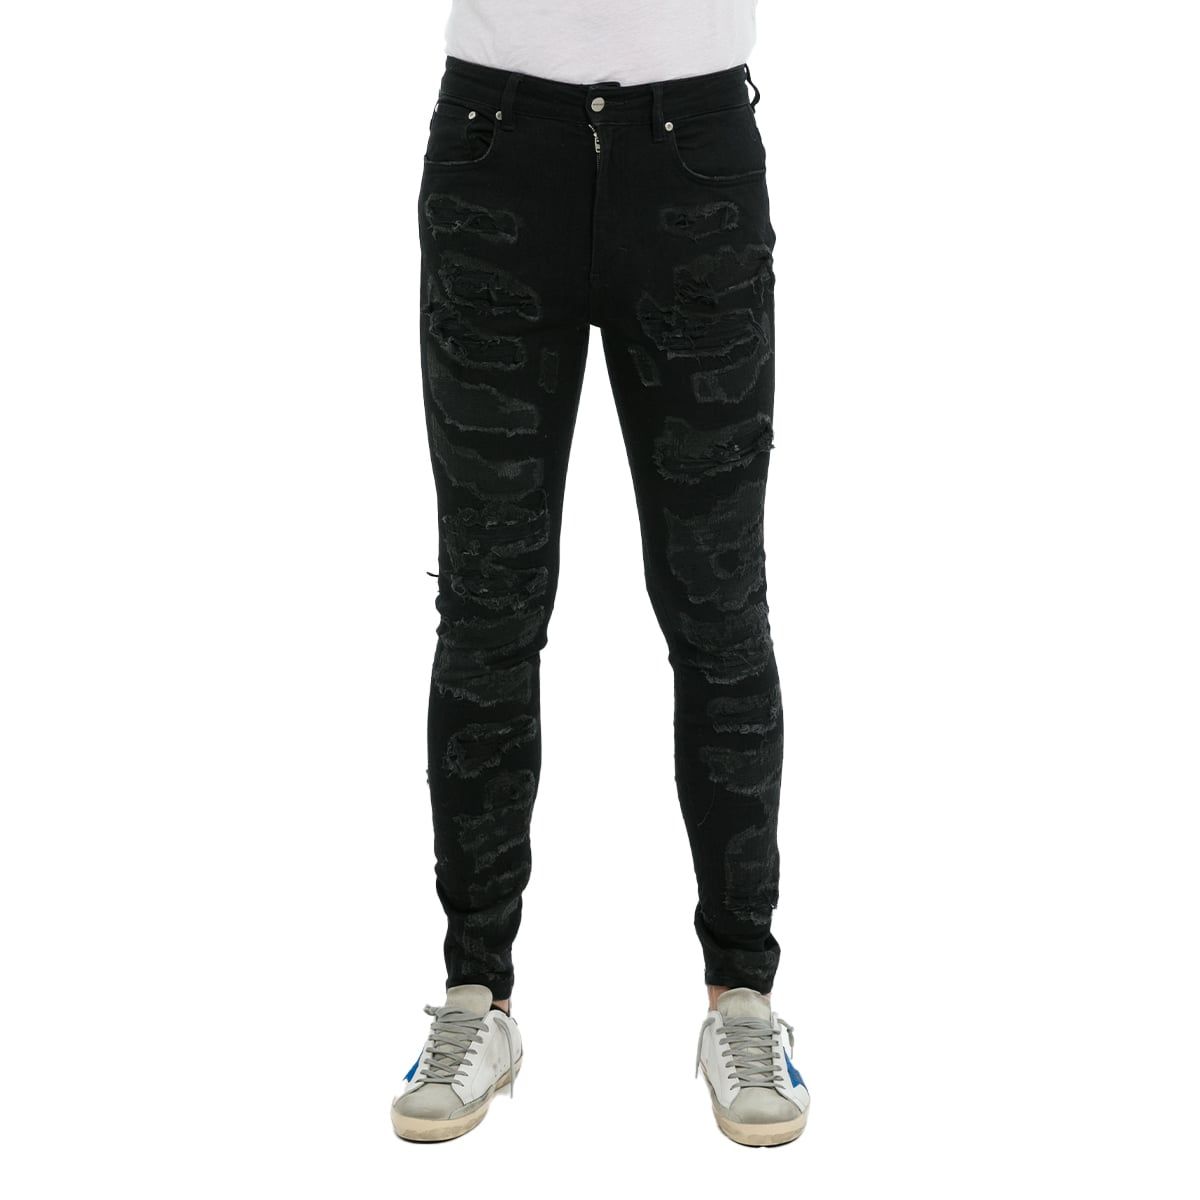 Shredded Black Denim Jeans